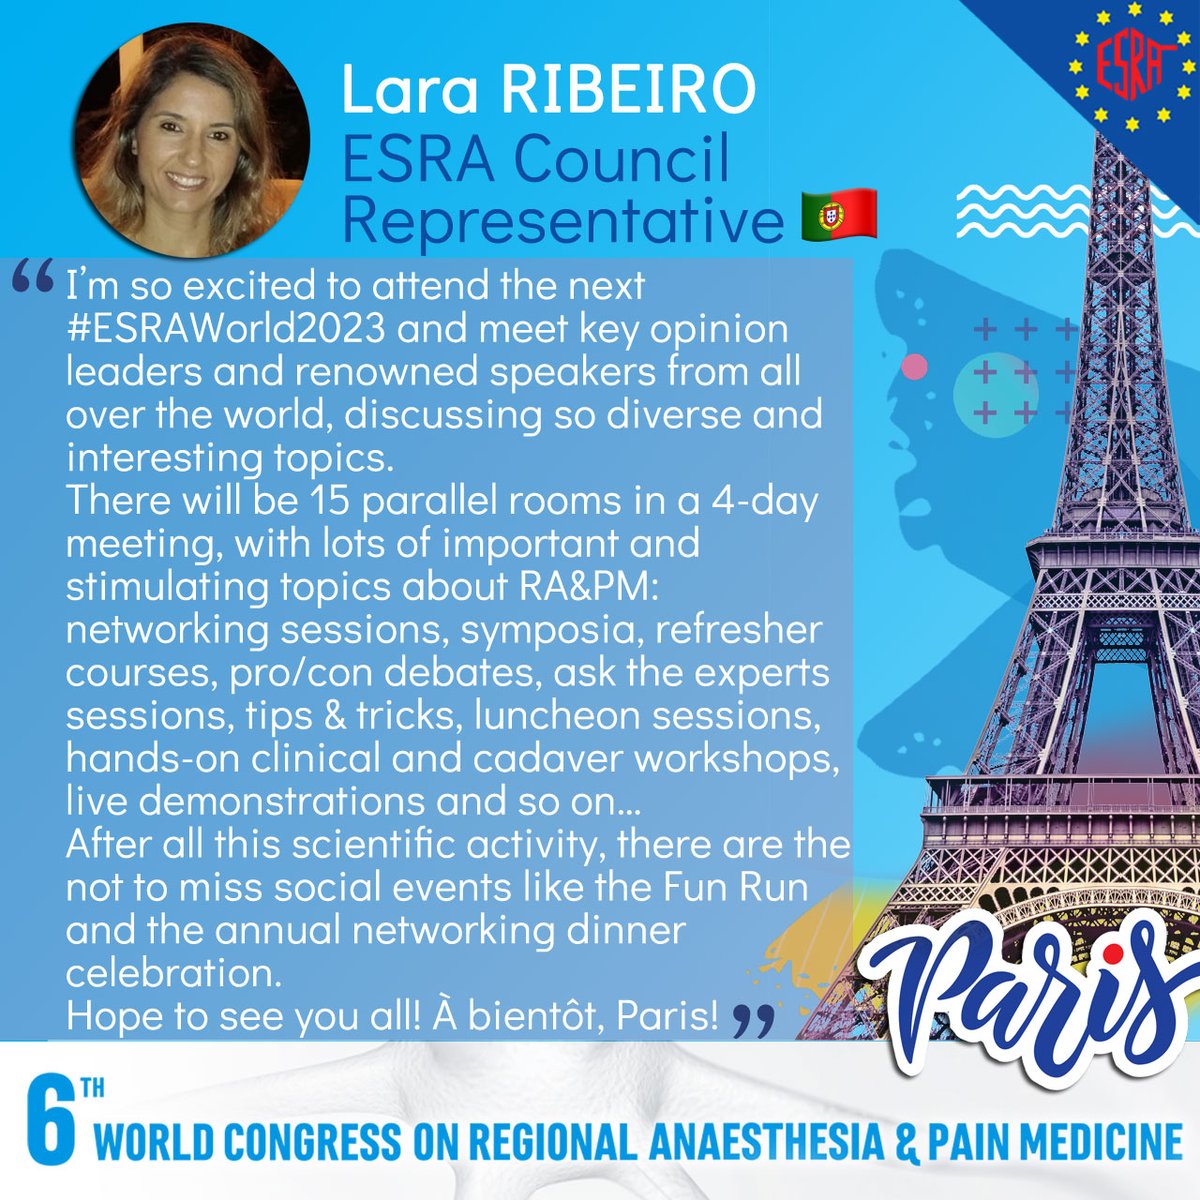 8 days to go! ⏳ Why you should attend the #ESRAworld2023 🇫🇷 by Lara Ribeiro, ESRA Council Representative 👇 esraworld2023.com